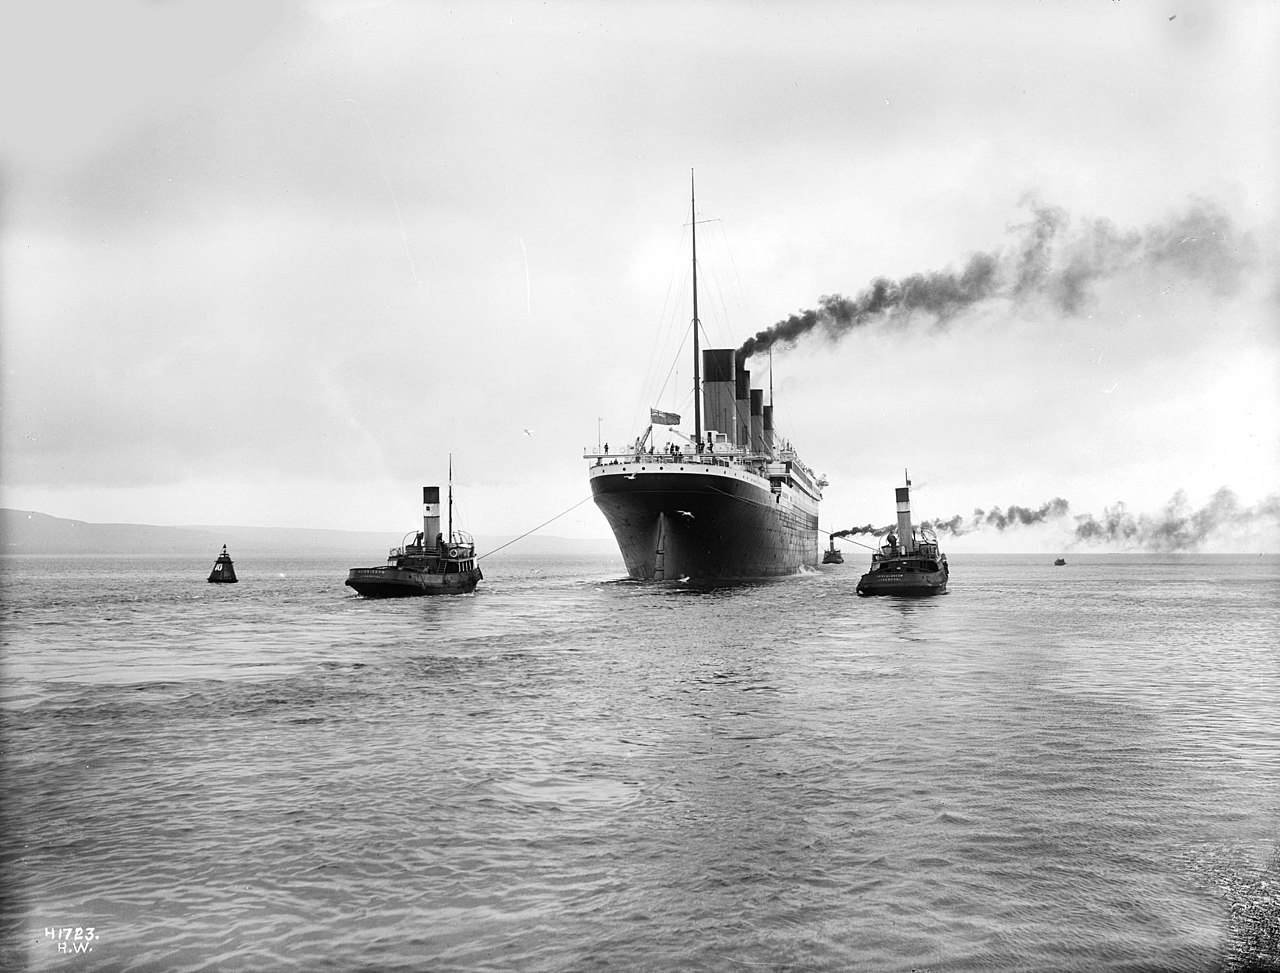 Déi donkel Geheimnisser an e puer wéineg bekannt Fakten hannert der Titanic Katastroph 3